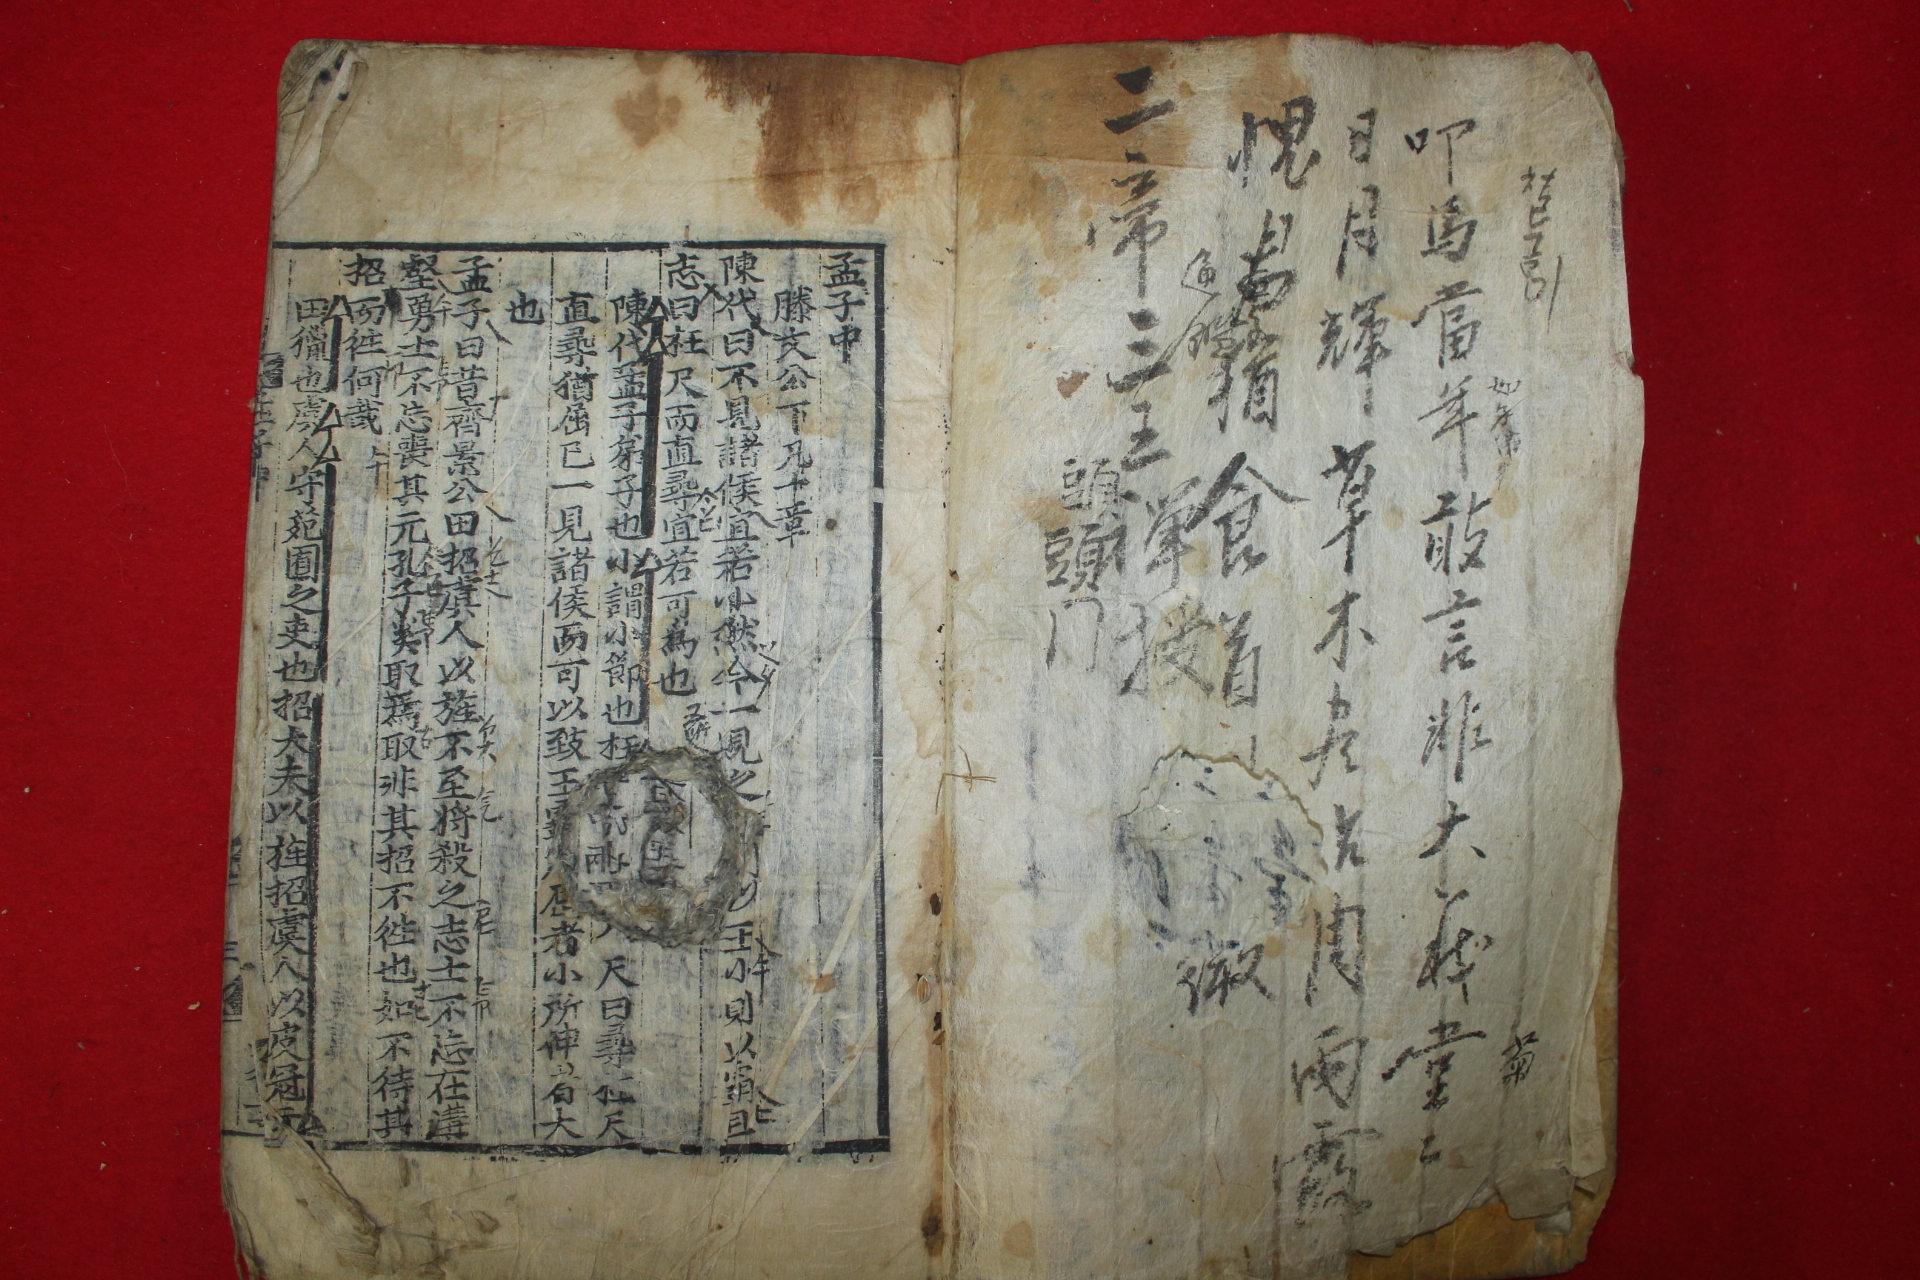 1600년대 희귀고목판본 맹자(孟子) 중권 1책